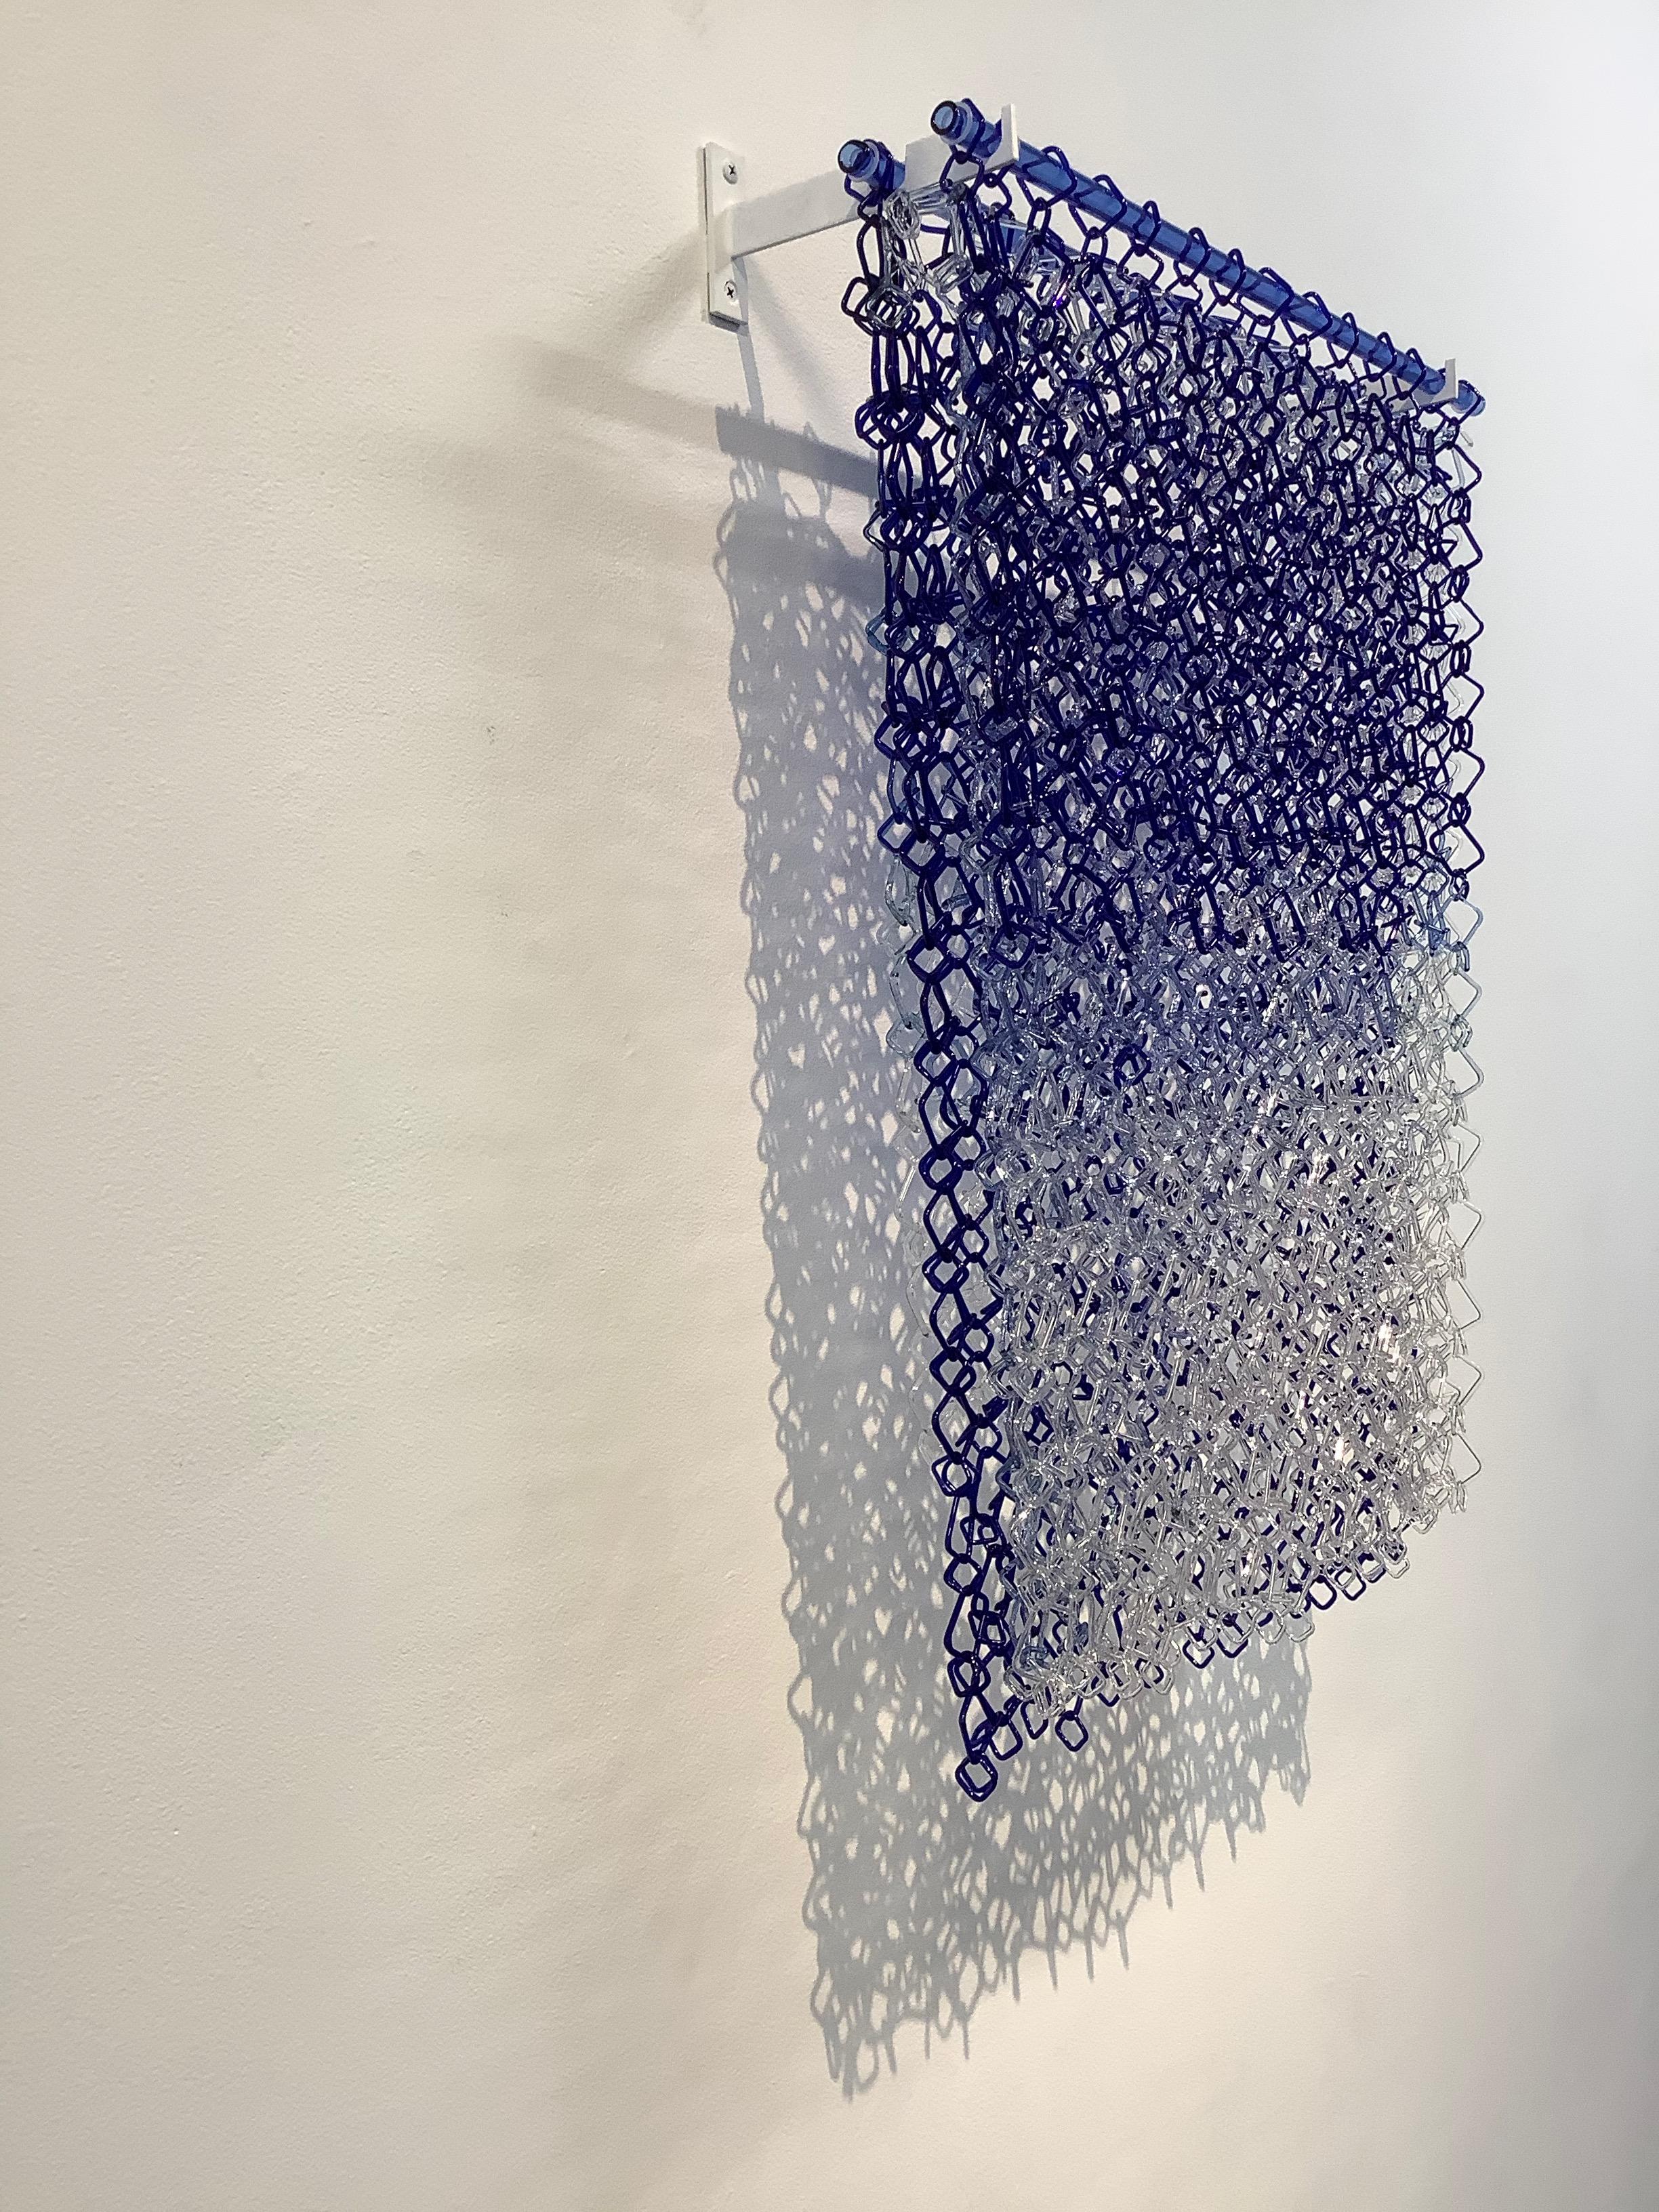 Diese Hängeskulptur von David Licata besteht aus quadratischen Gliedern aus gebranntem Borosilikatglas in Blautönen, die von dunklem Kobalt im oberen Bereich über helles, durchscheinendes Violett in der Mitte bis zu klaren Gliedern im unteren